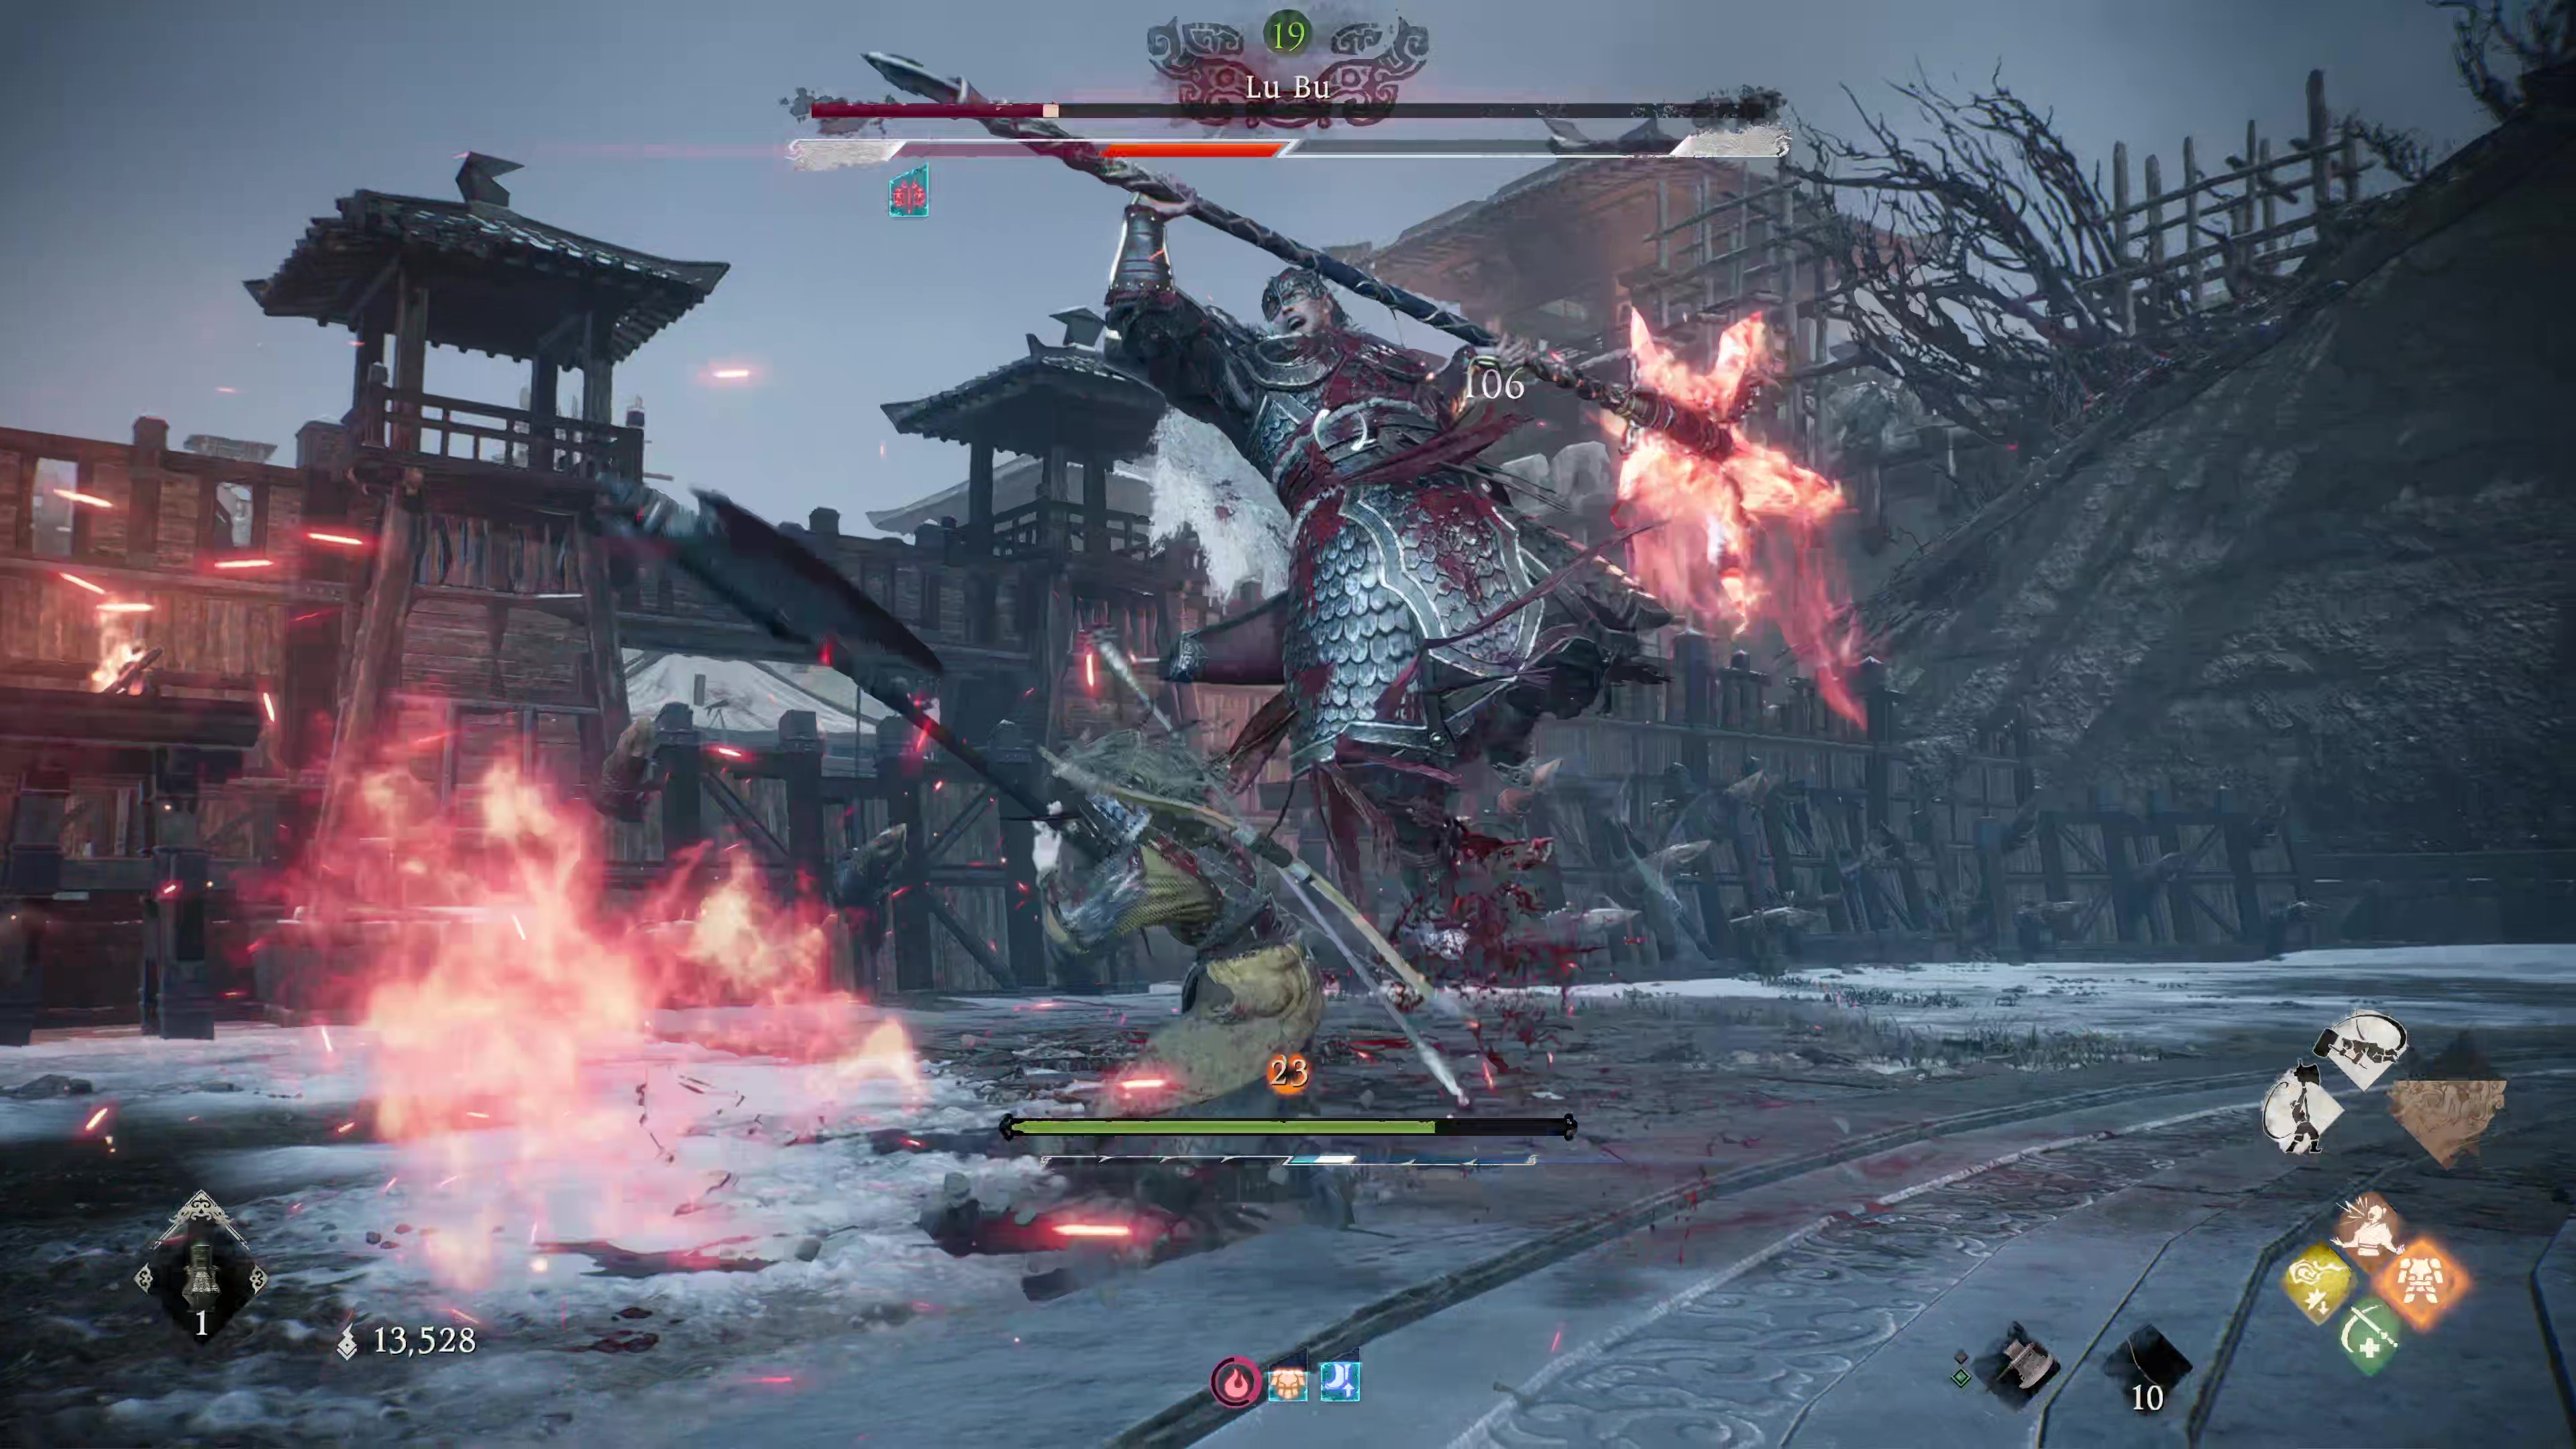 Скриншот из игры Wo Long: Fallen Dynasty, на котором игрок собирается отразить критический удар Лу Бу.